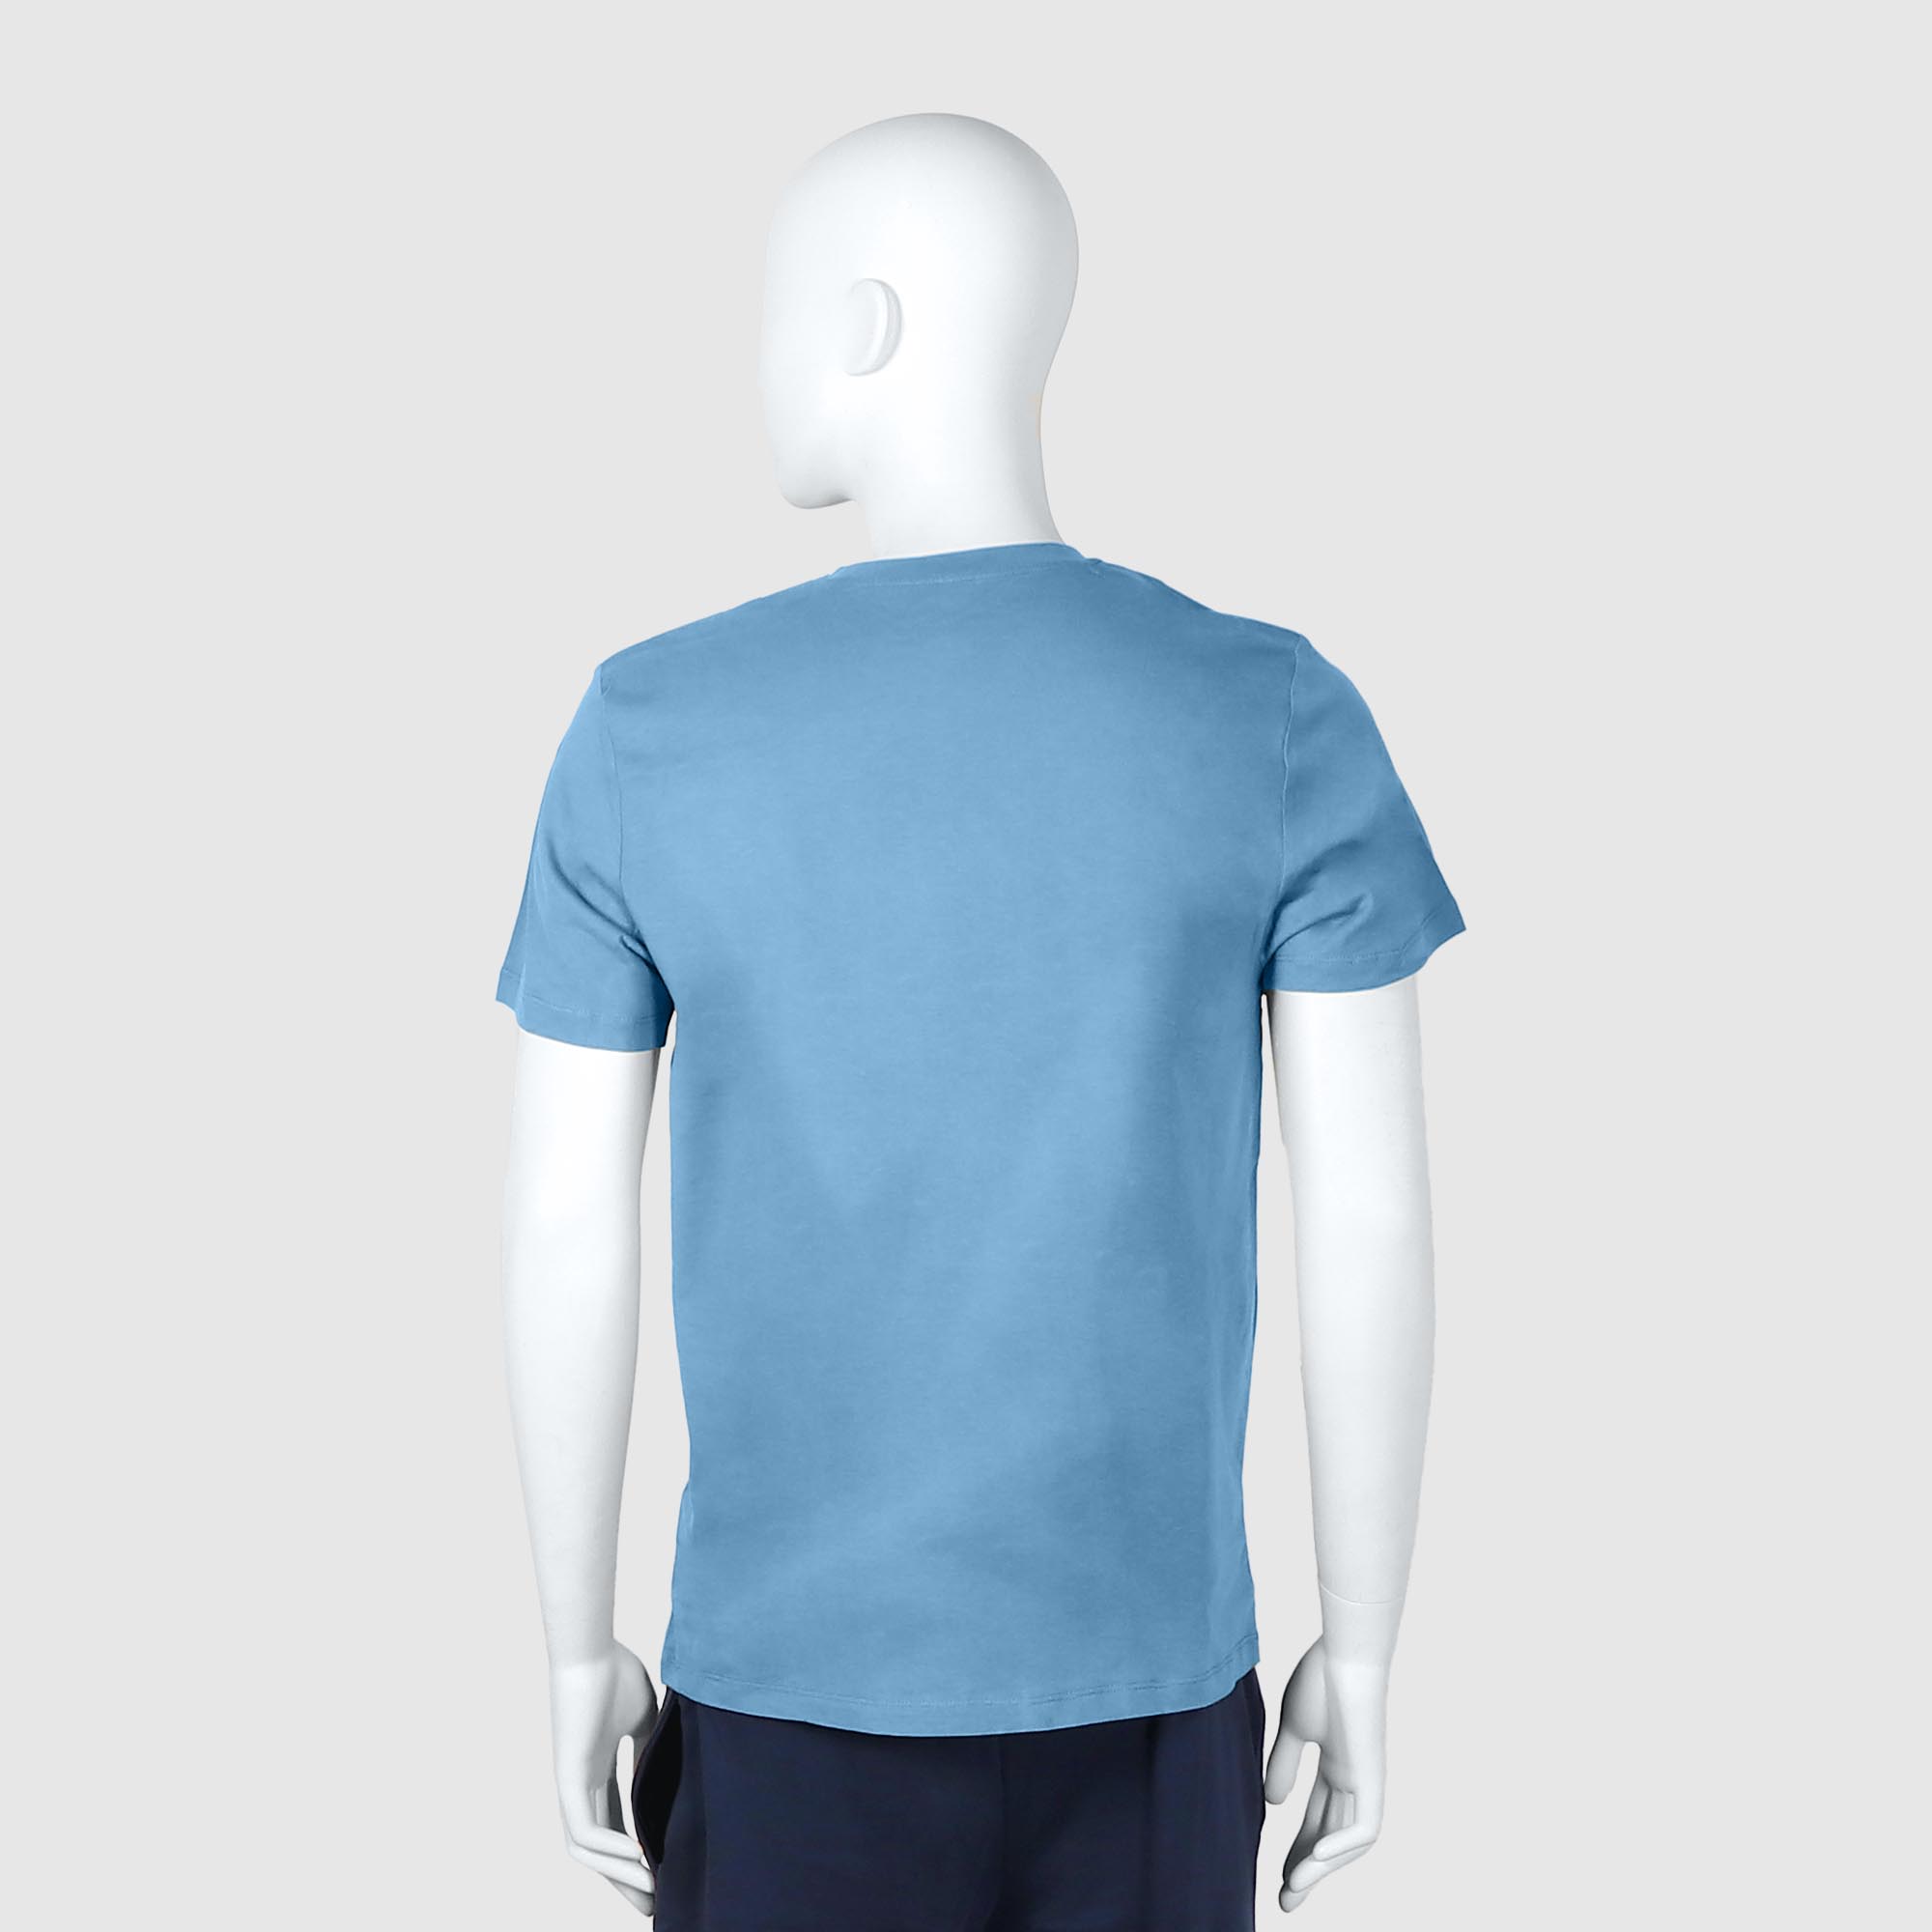 Мужская футболка Diva Teks голубая (DTD-03), цвет голубой, размер 46-48 - фото 2